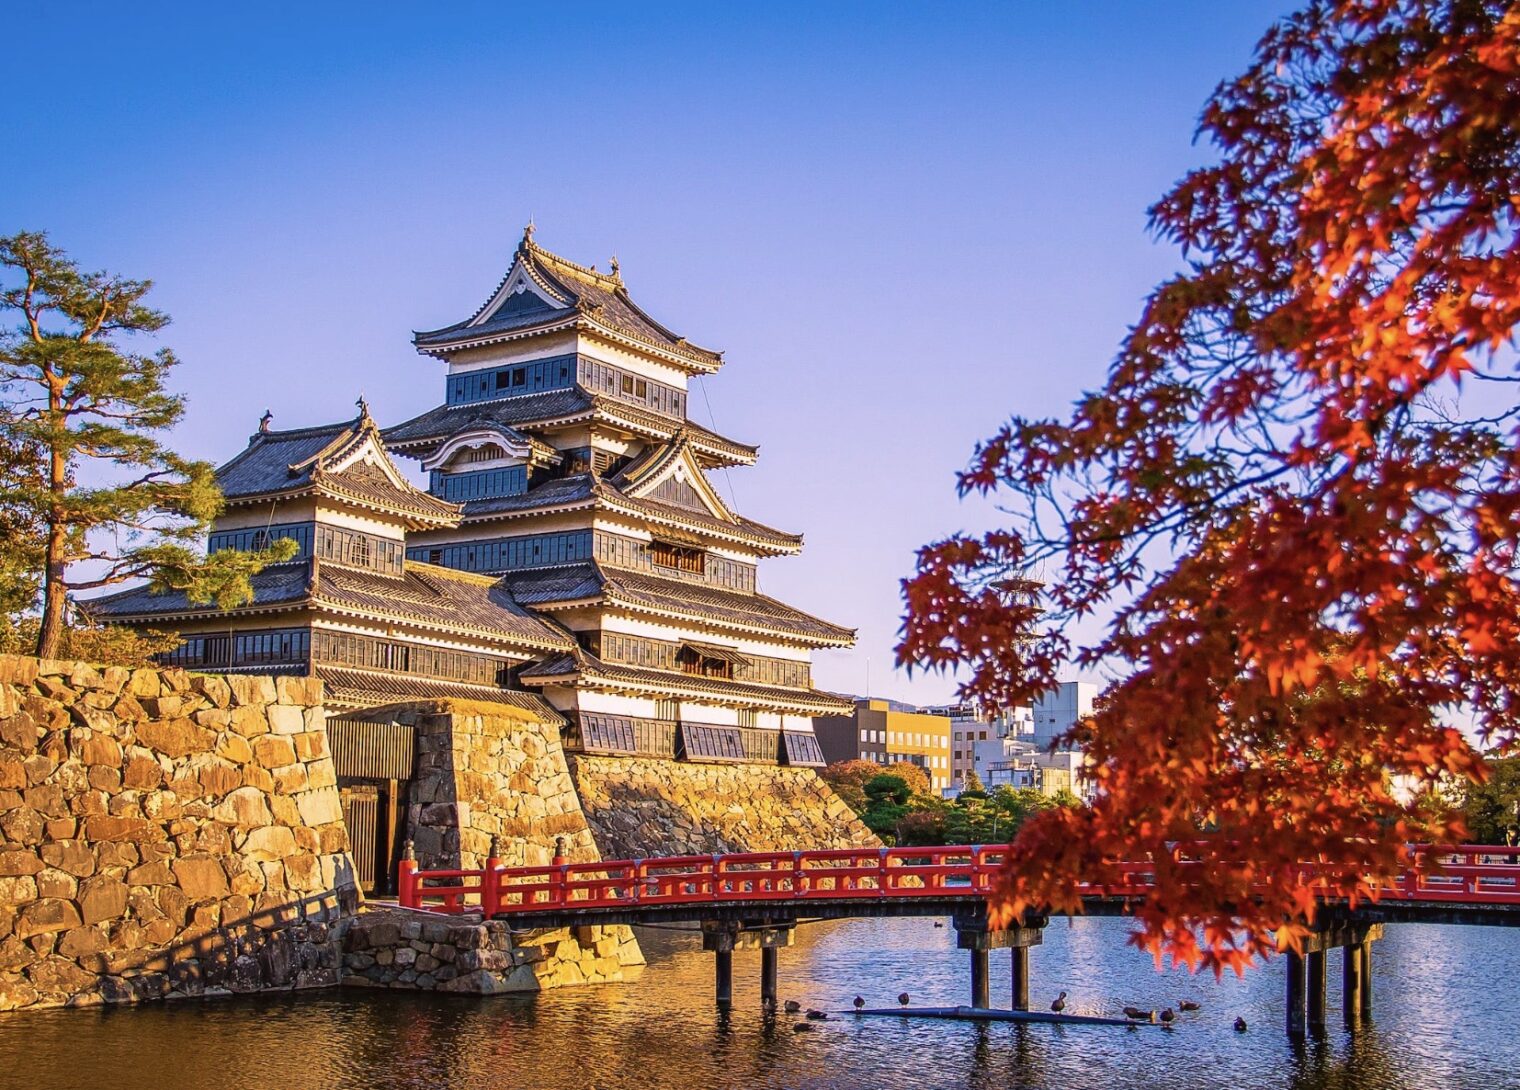 松本城は、国宝に指定されている城の一つで、姫路城、彦根城、犬山城、松江城とともに称されています。築造は文禄2～3年（1593～4年）とされ、五重六階の天守は日本最古のものです。戦国時代に始まり、永正年間に造られた深志城が基盤で、後に松本城へと発展しました。小笠原氏の信濃府中の館が東山麓へ移転し、城と支城が築かれました。天正10年（1582年）に小笠原貞慶が深志城を回復し、天正18年（1590年）には石川数正・康長父子が城主となり、城と城下町の整備が進みました。市のシンボルとして、歴史の中で市民の情熱に支えられてきた松本城は、松本の誇りであり、重要な文化遺産です。